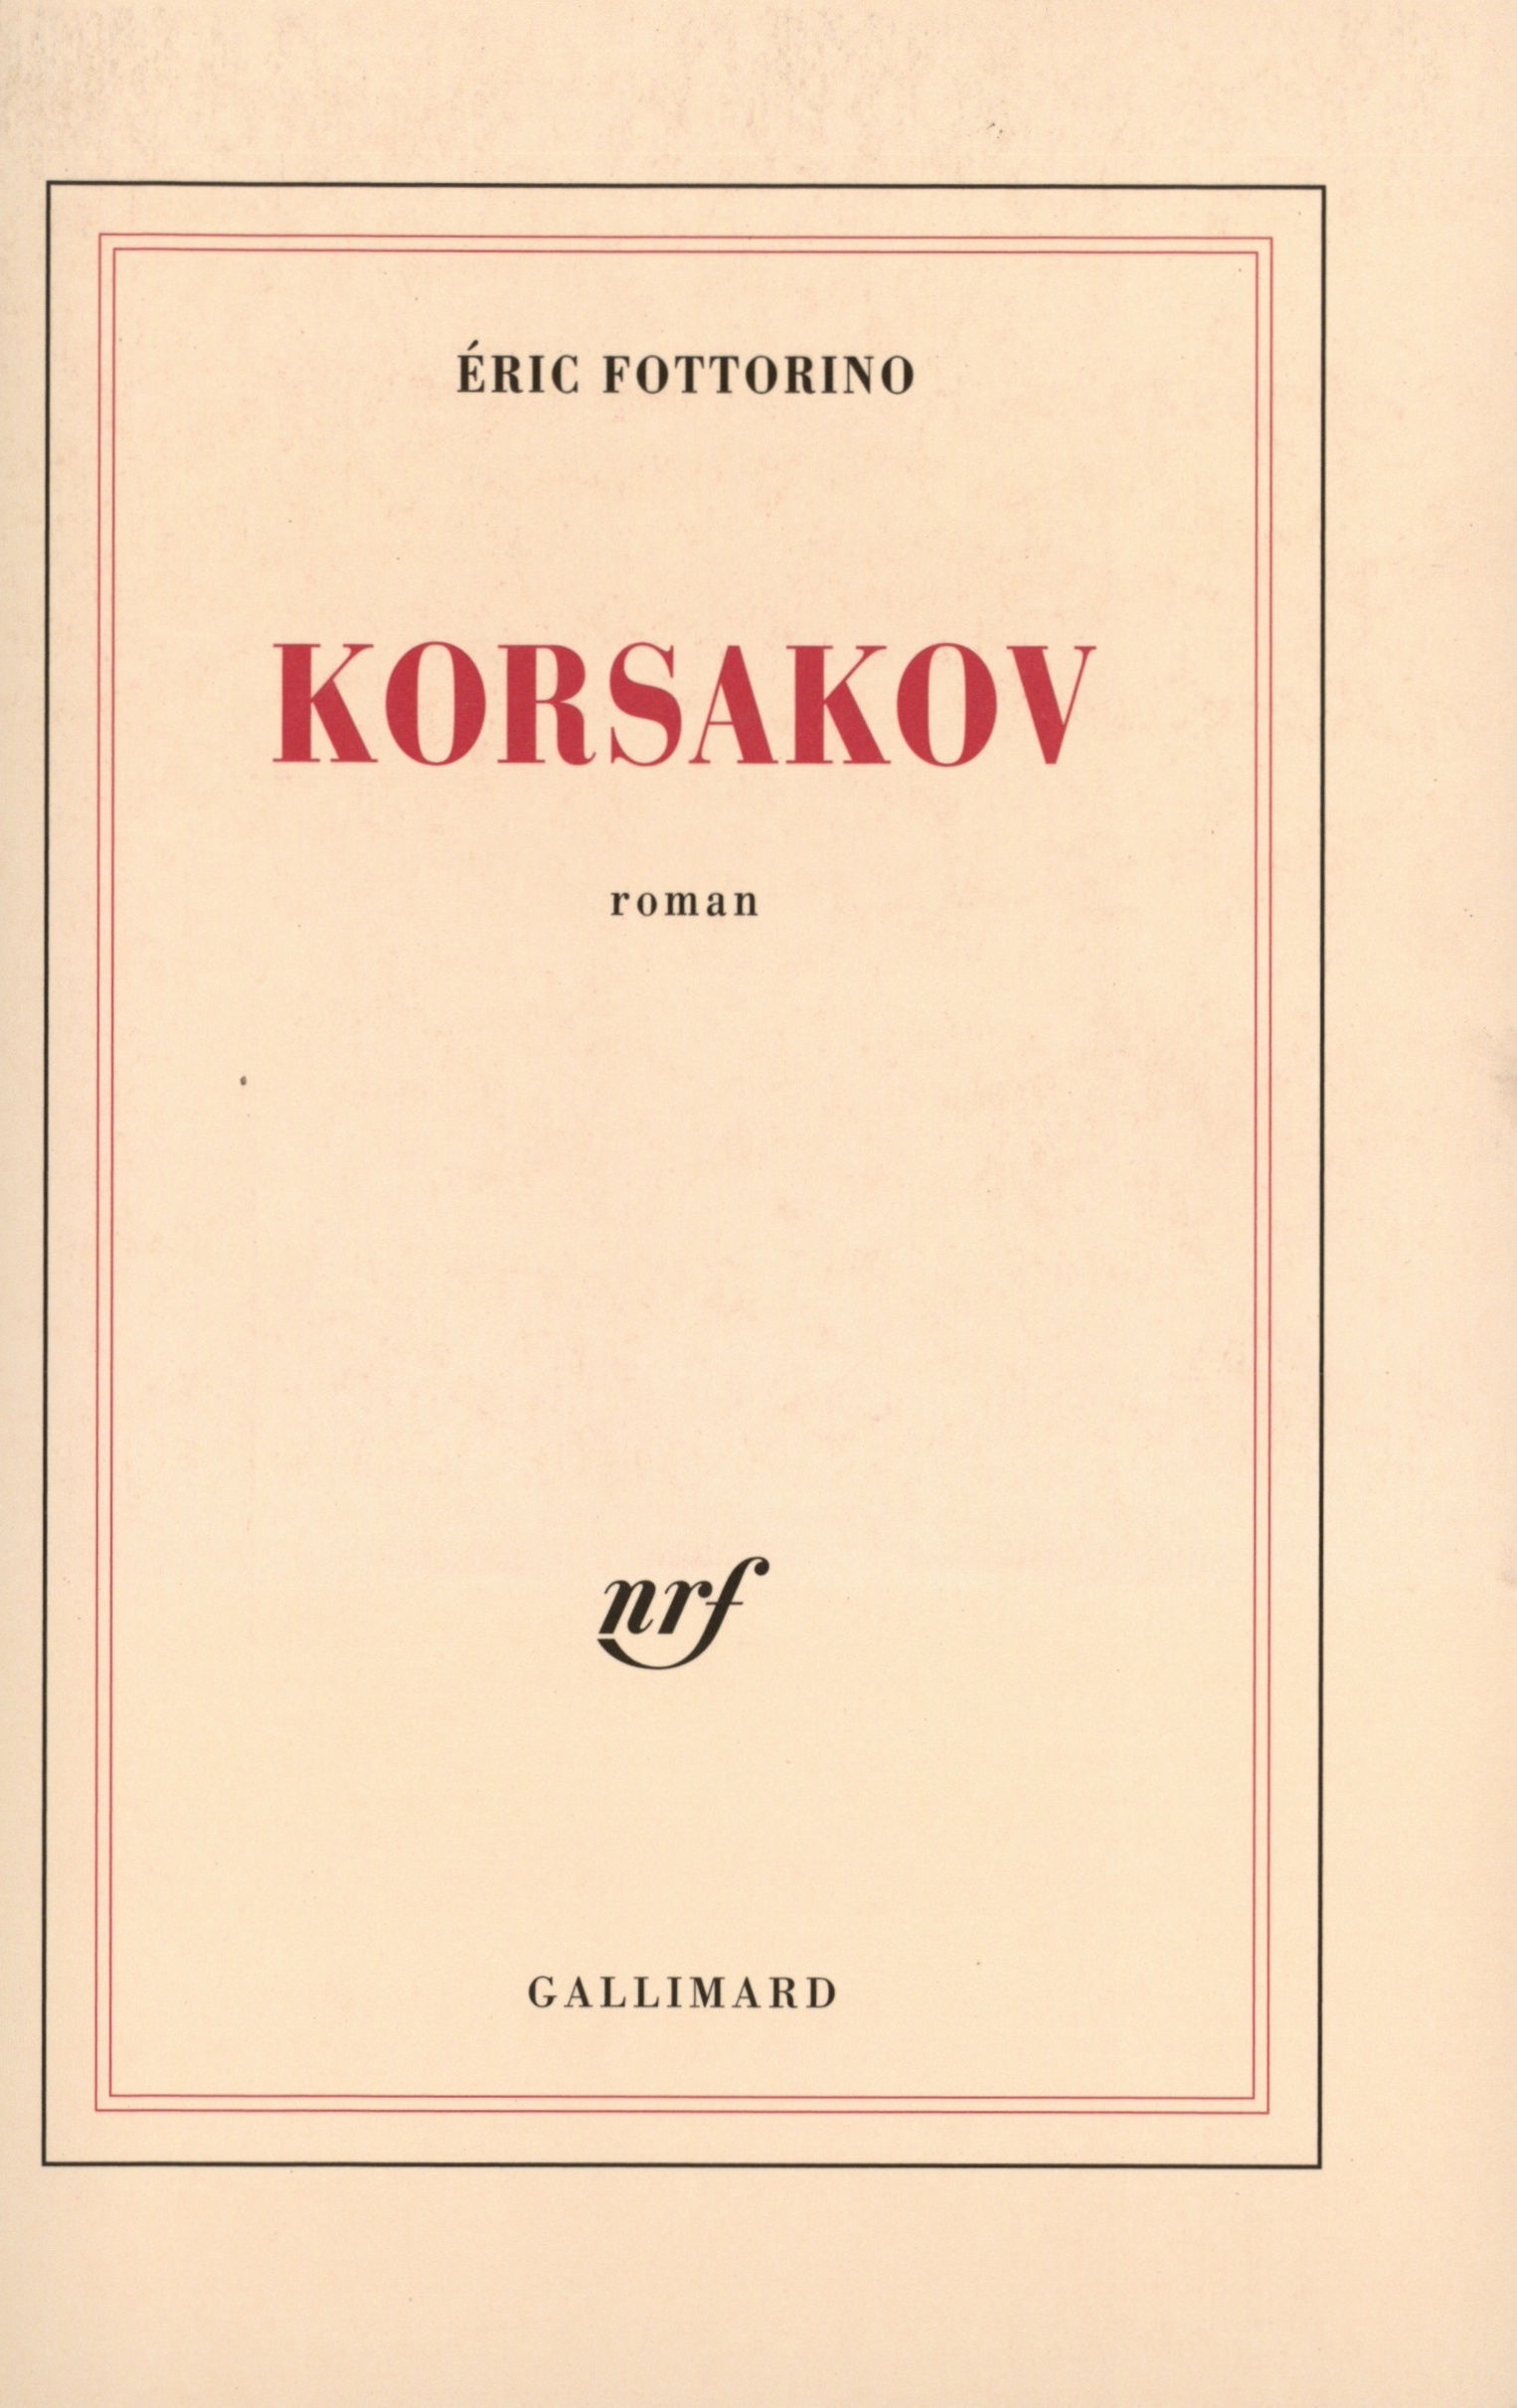 Korsakov (9782070747467-front-cover)